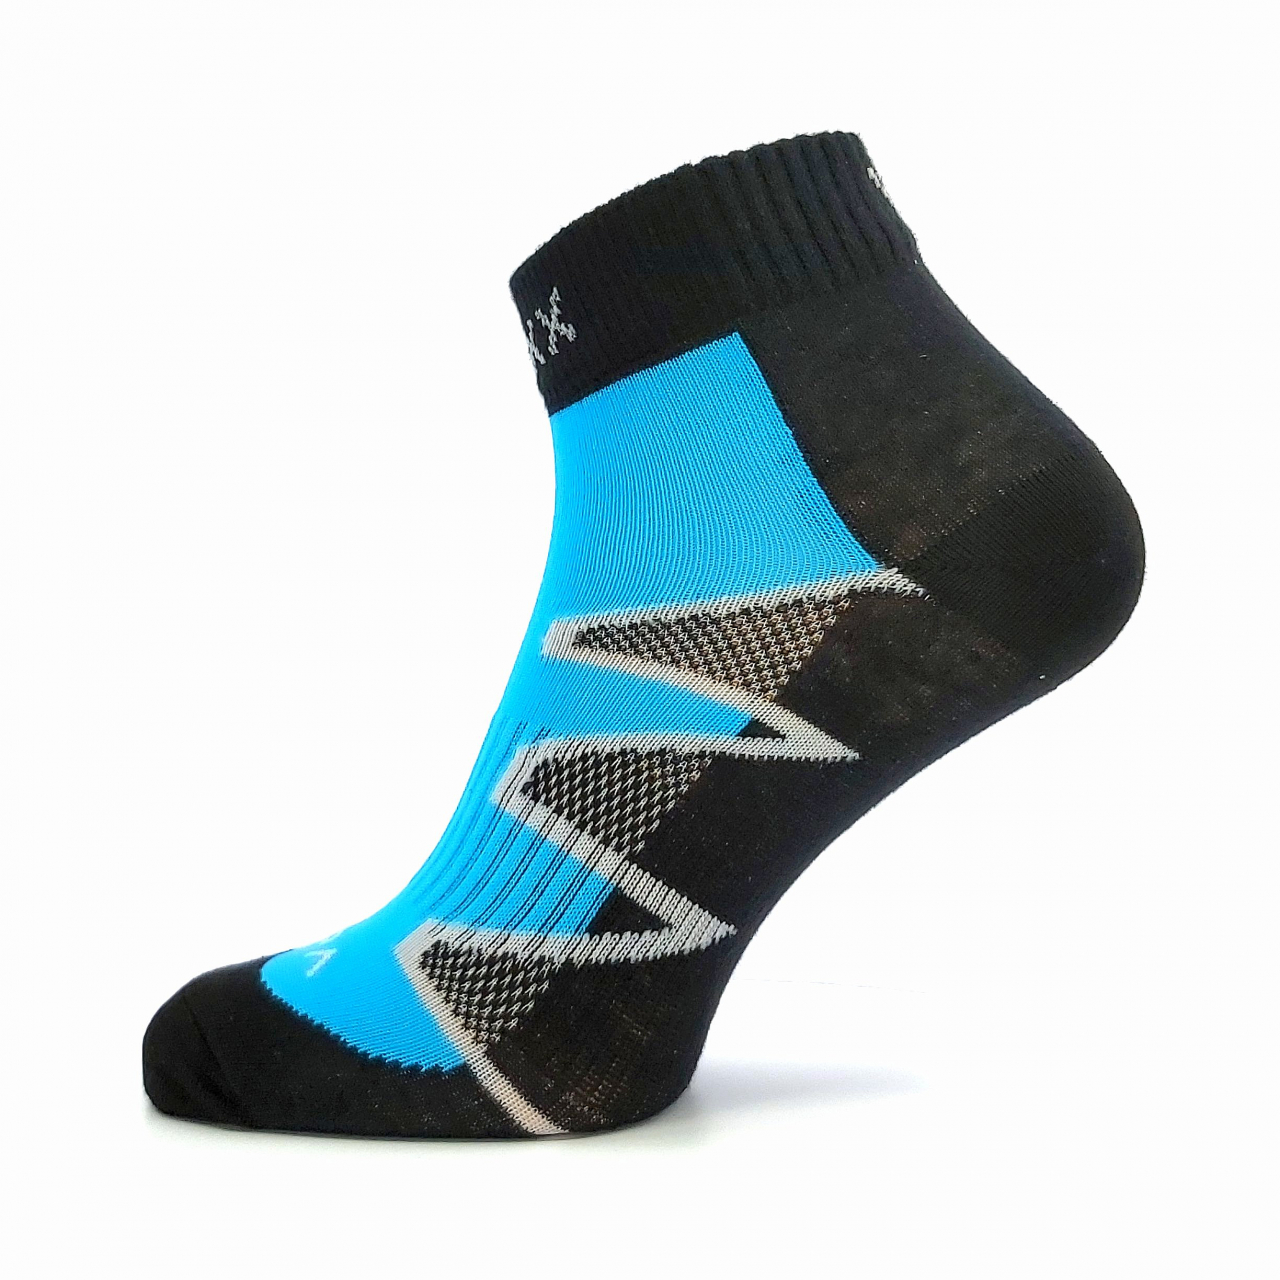 Sportovní ponožky Voxx Monsa - černé-modré, 39-42